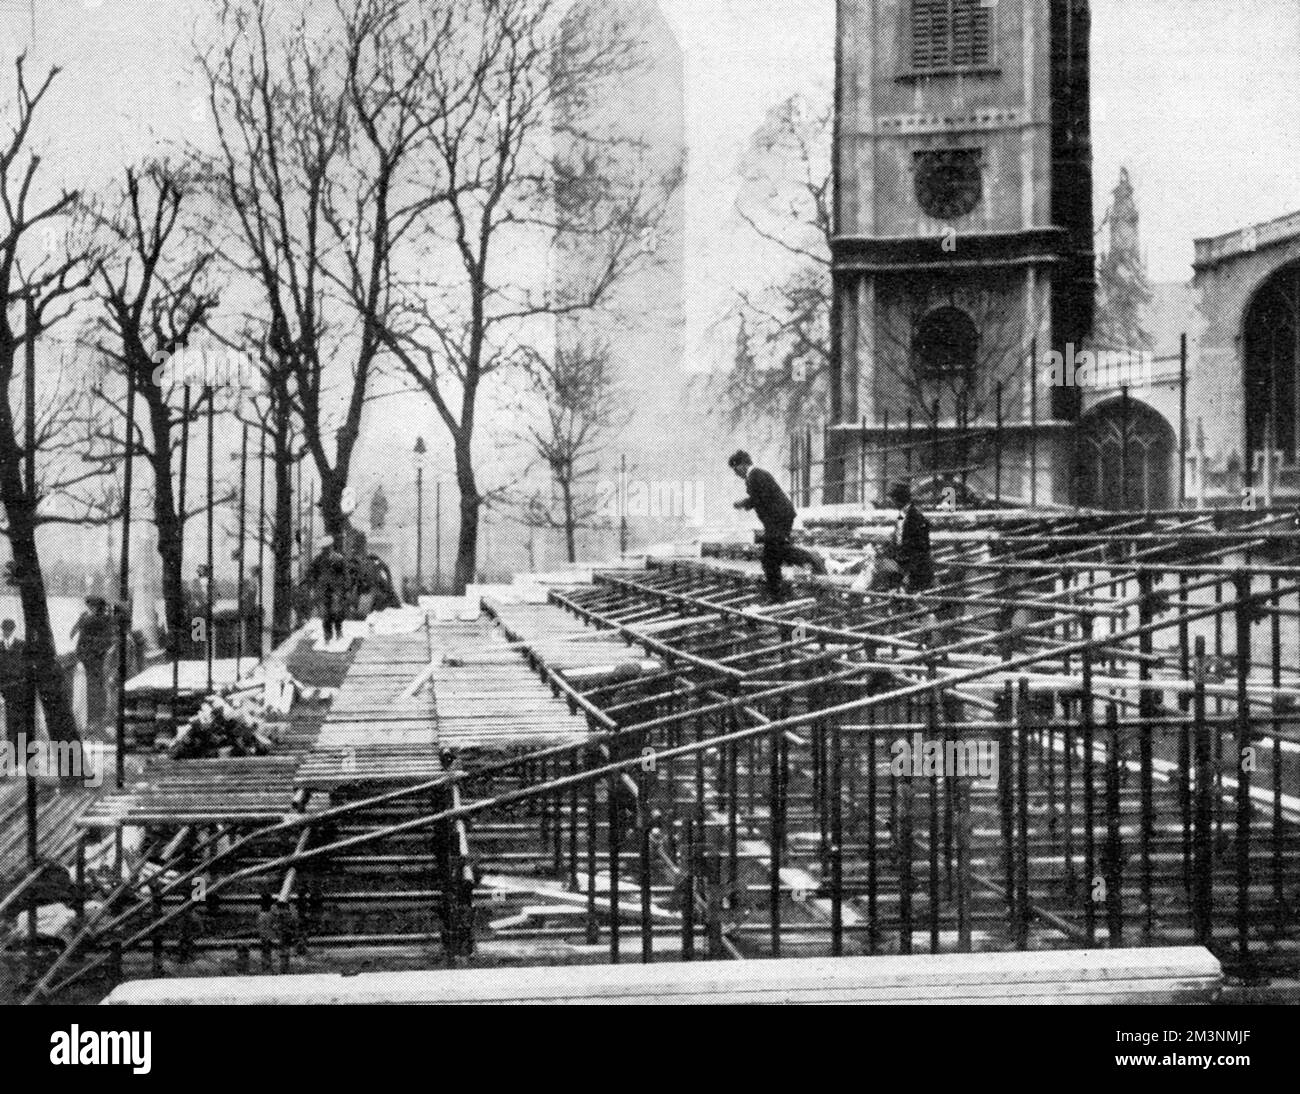 Stände werden zur Vorbereitung der Hochzeit des Herzogs von York (König George VI.) und Lady Elizabeth Bowes-Lyon am 26 1923. April in Westminster Abbey errichtet. Laut der dazugehörigen Bildunterschrift war eine große Anzahl der Sitzplätze bereits zu hohen Preisen gebucht worden. Datum: 1923 Stockfoto